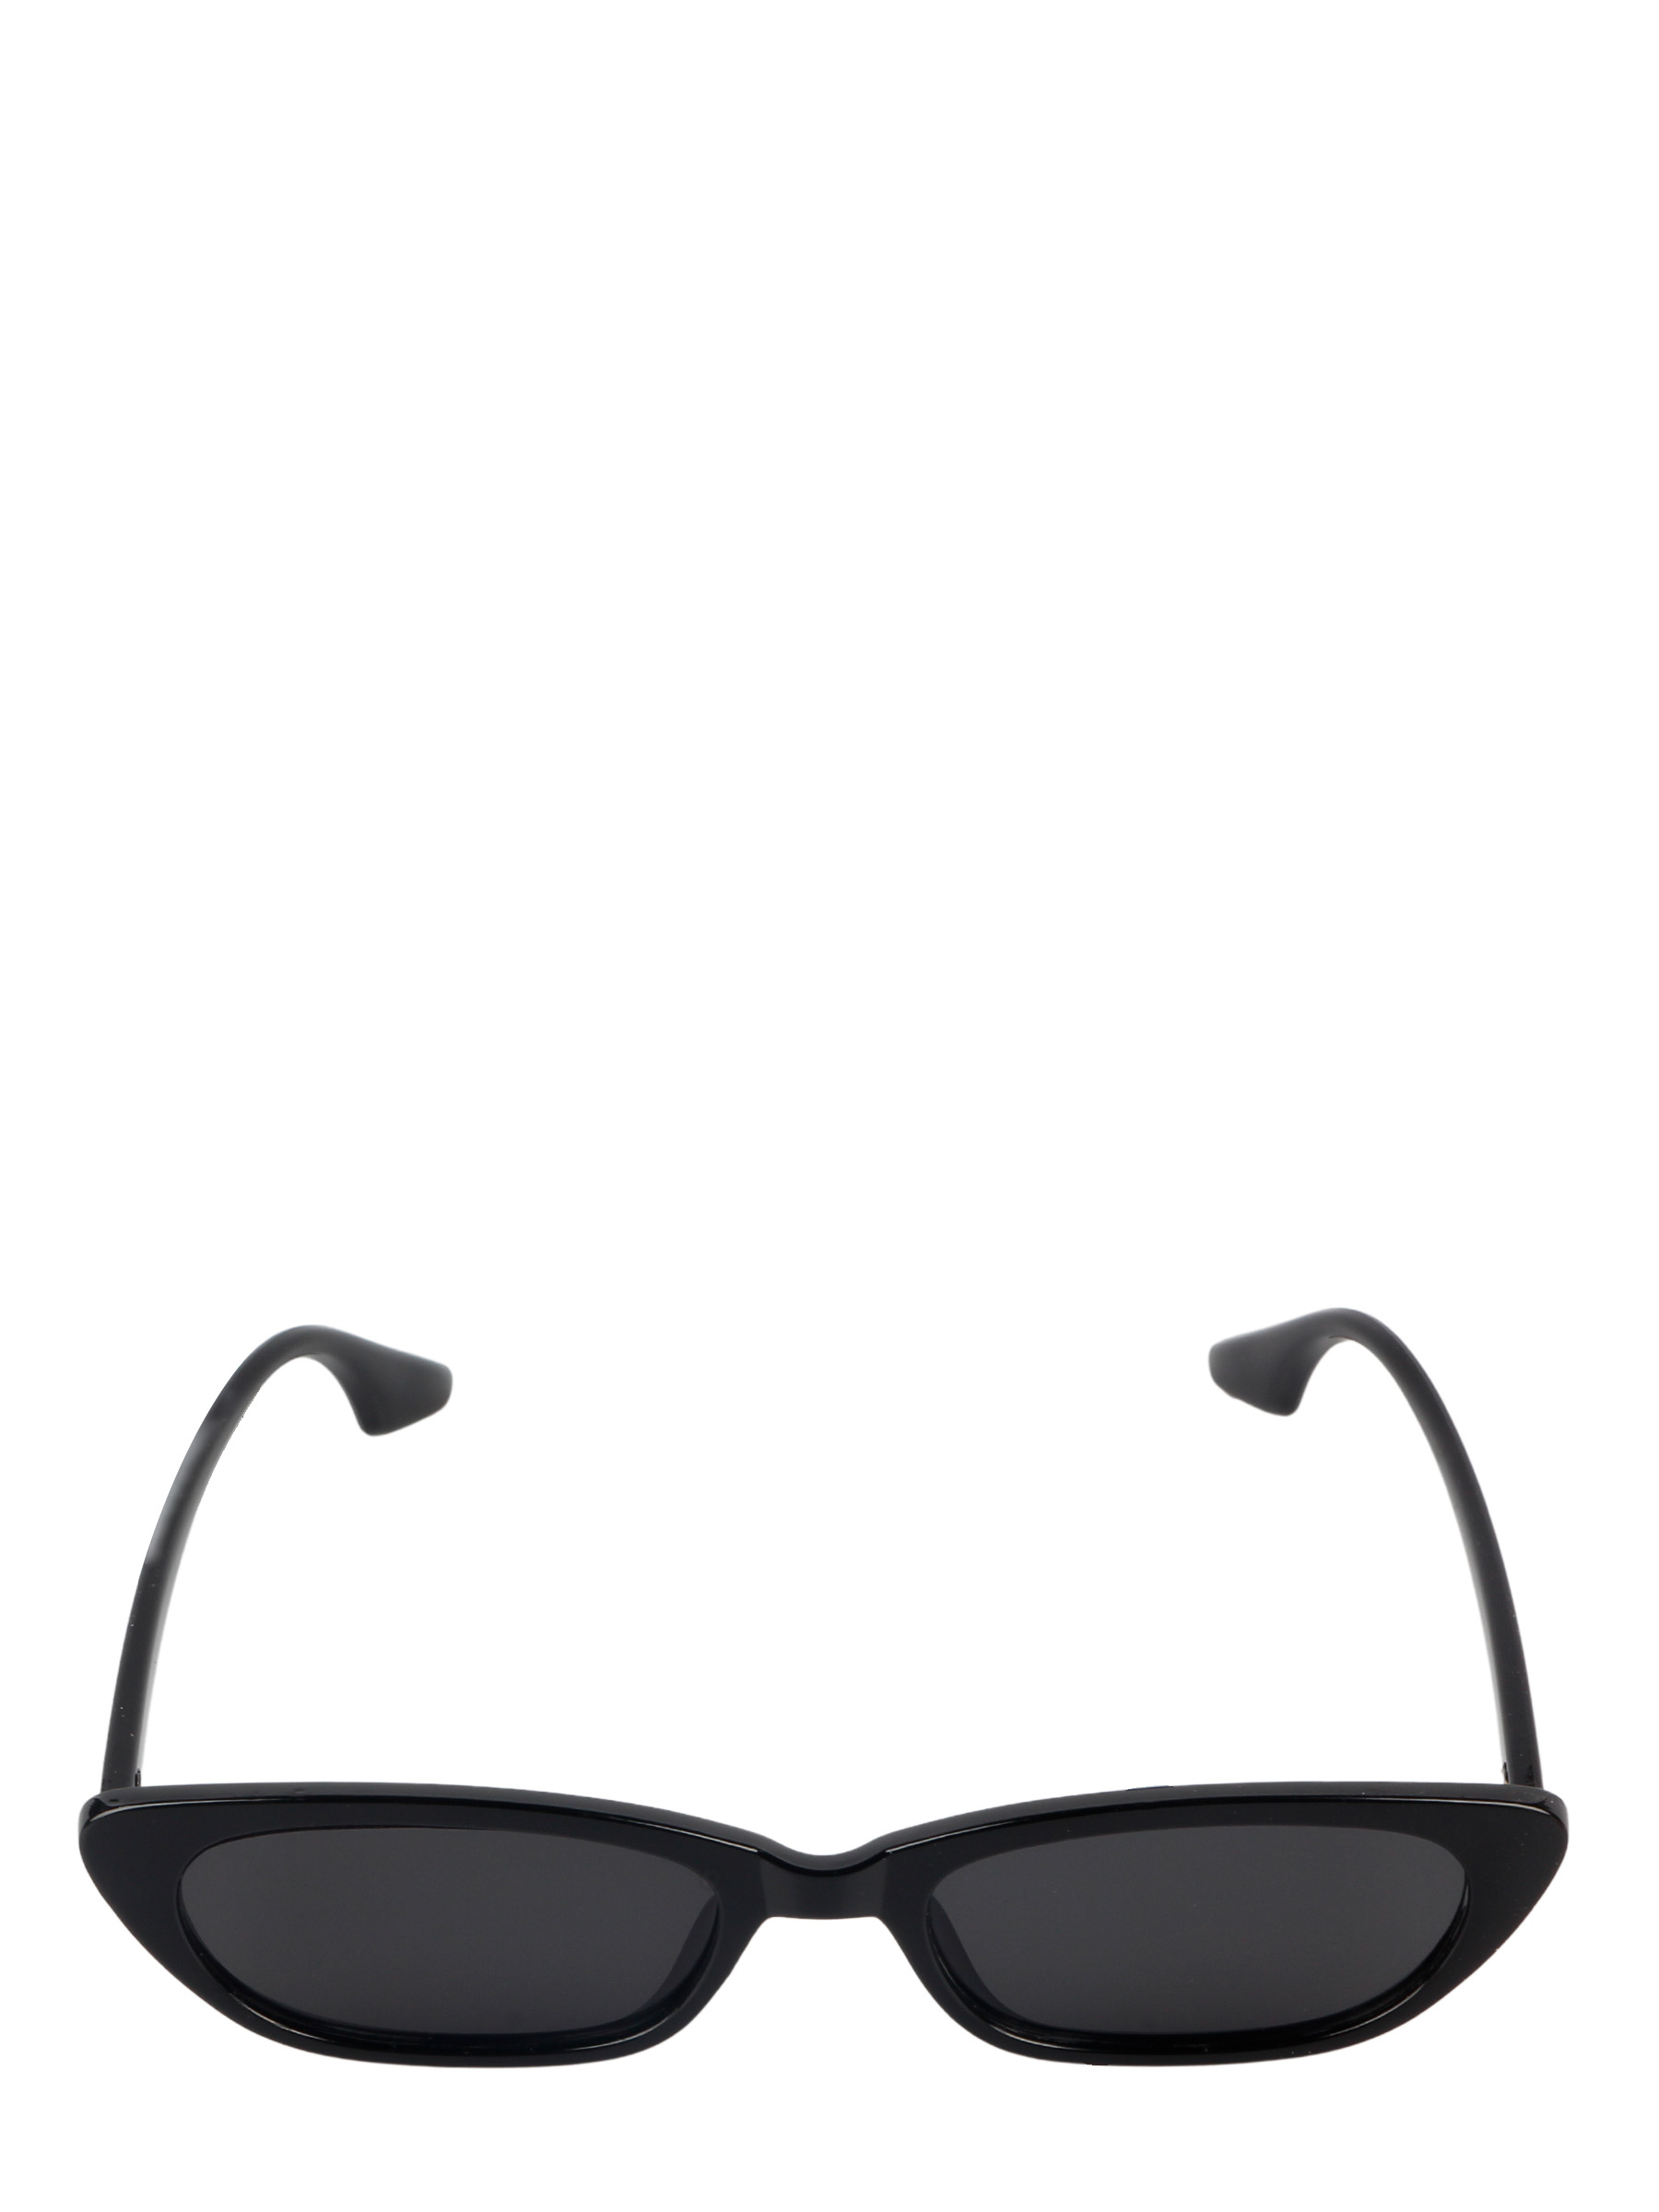 фото Солнцезащитные очки женские pretty mania mdd0012 черный глянцевый